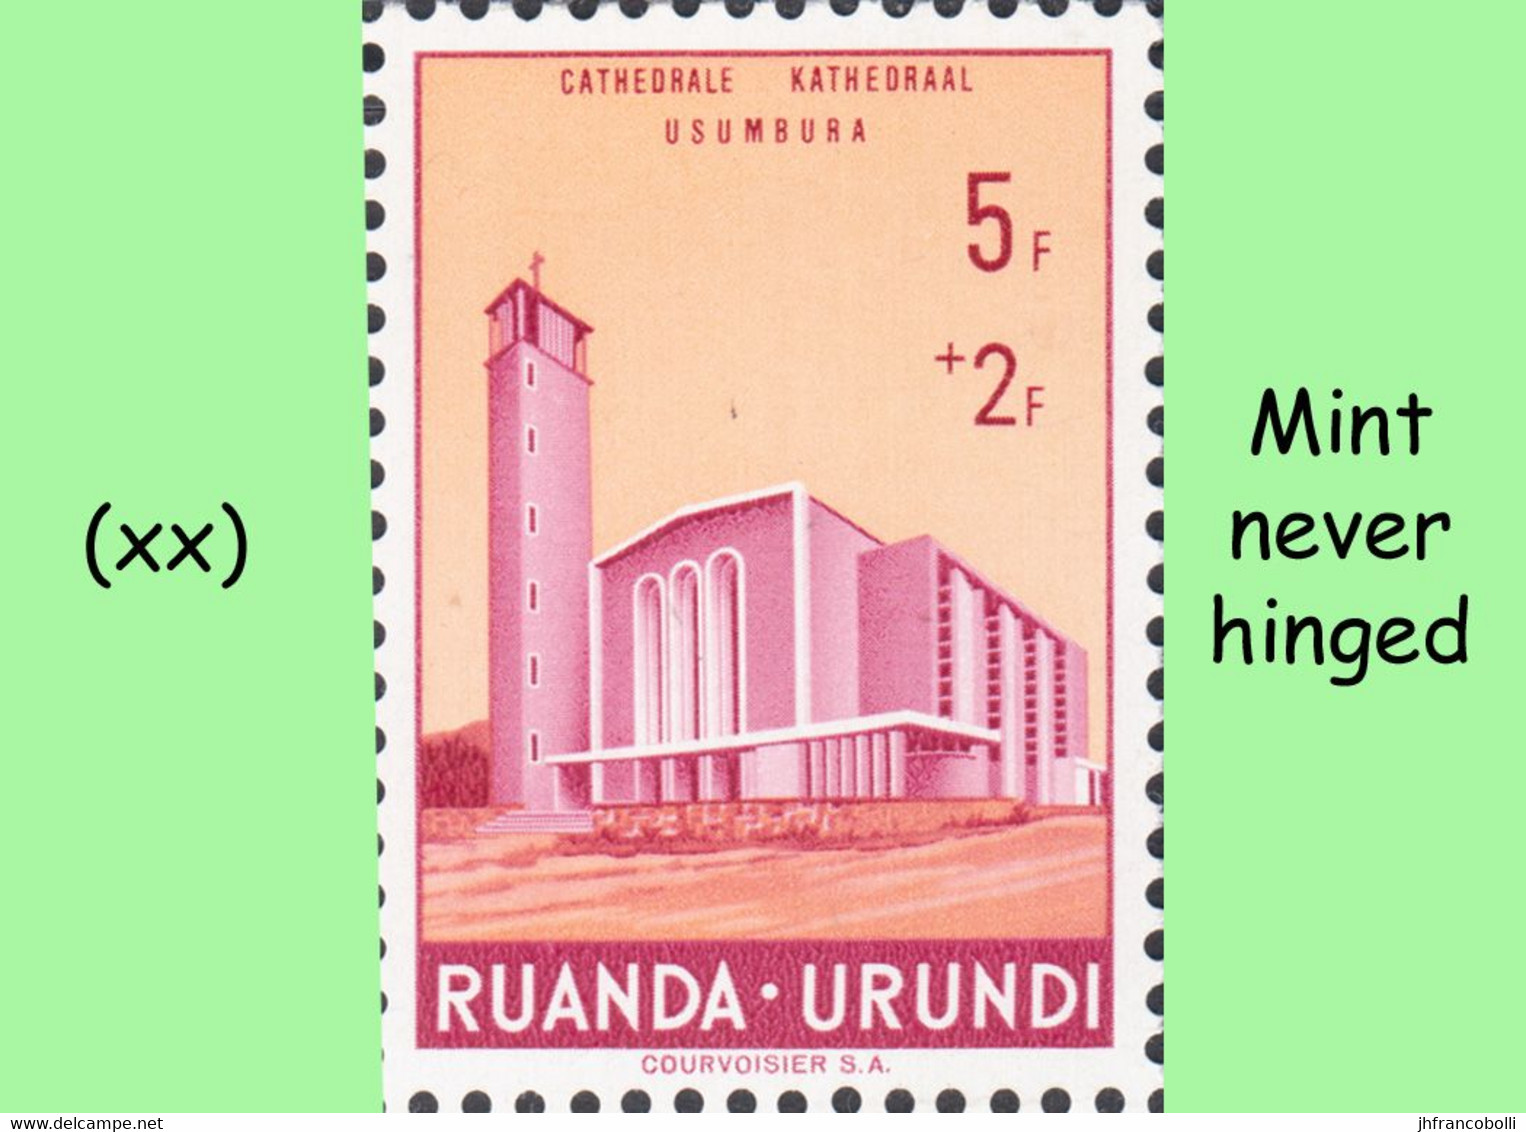 1961 ** RUANDA-URUNDI RU 225/230 MNH USUMBURA CATHEDRAL ( 6 stamps )